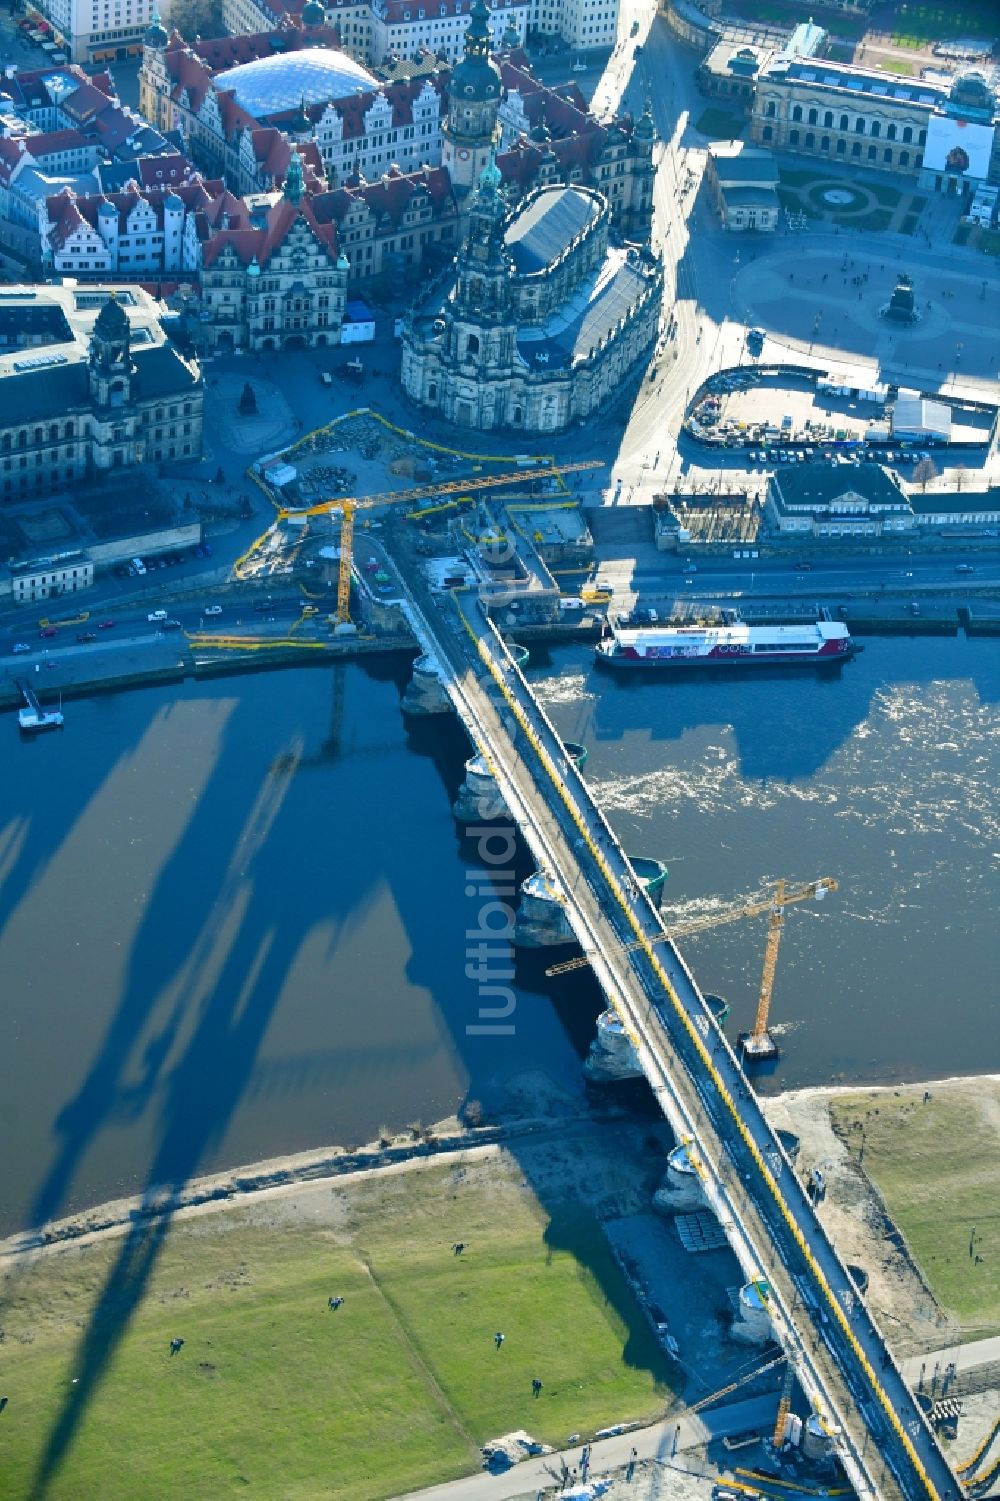 Luftbild Dresden - Baustelle zu Sanierungsarbeiten am Straßen- Brückenbauwerk Augustusbrücke in Dresden im Bundesland Sachsen, Deutschland